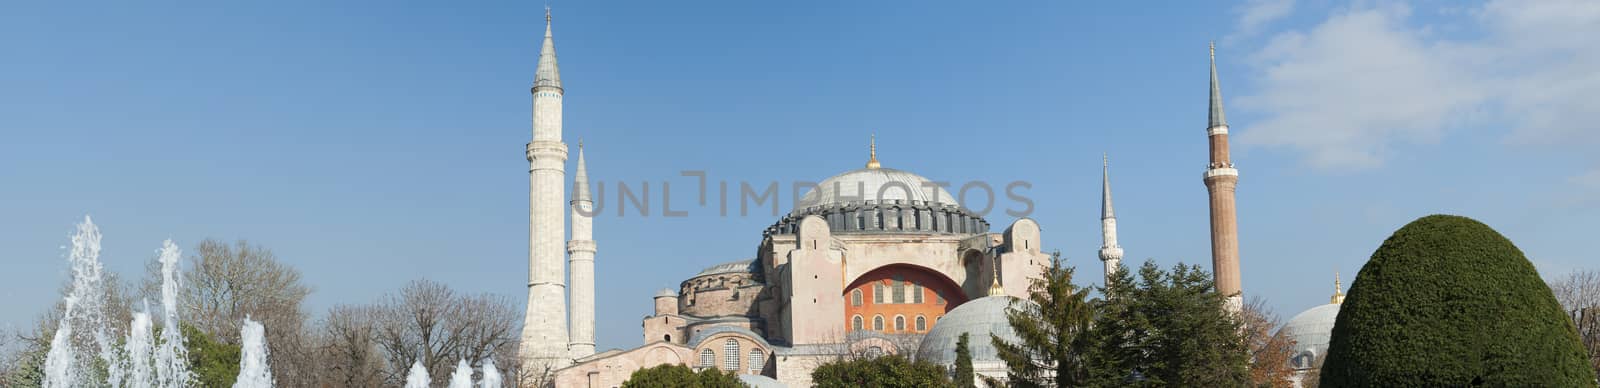 View of Hagia Sophia in Istanbul Turkey by paulvinten